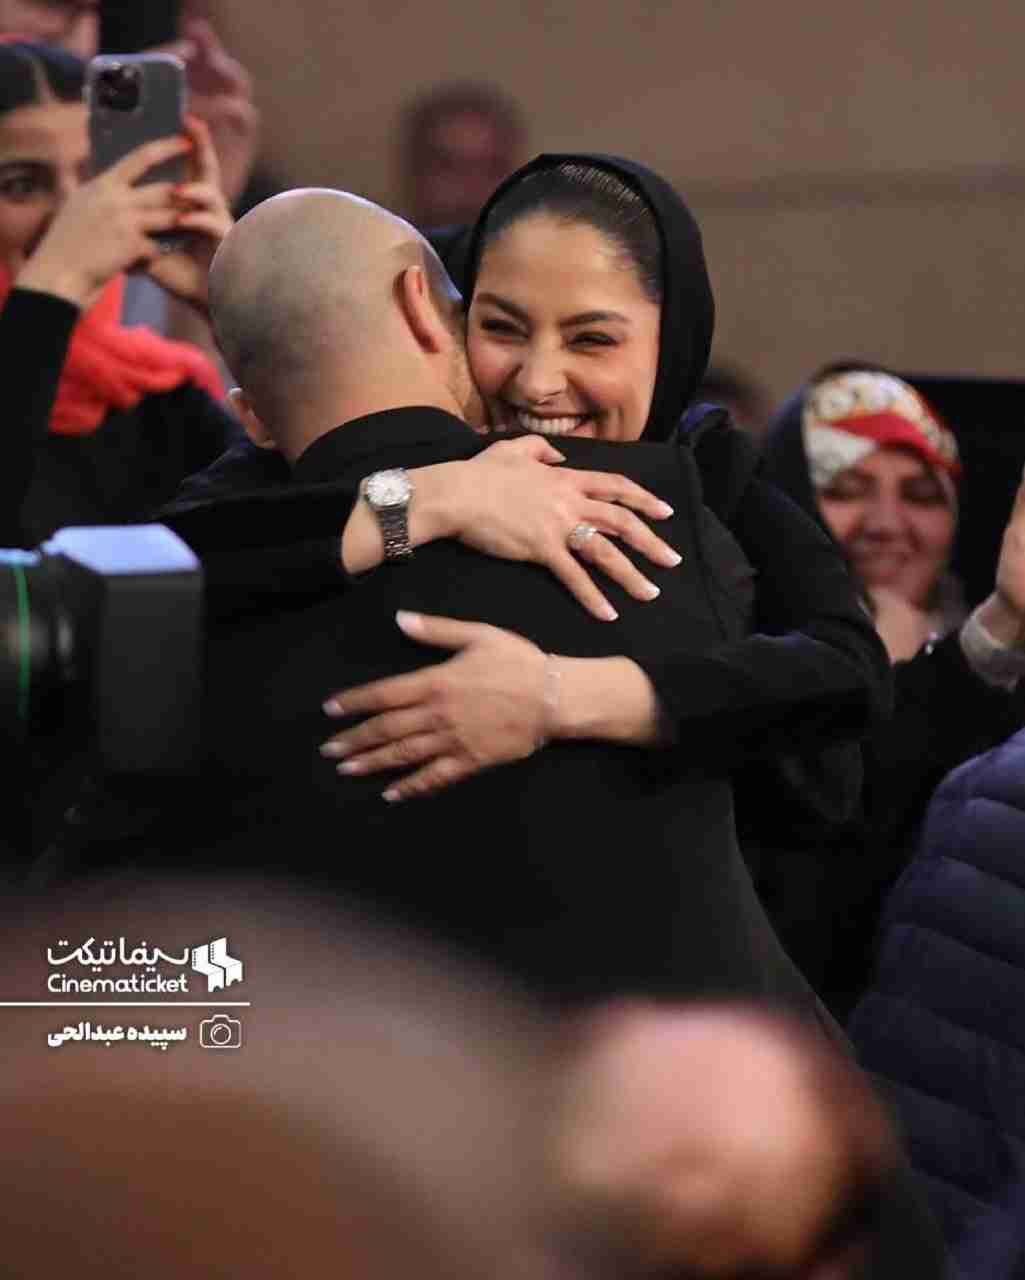 مارال بنی آدم در آغوش همسرش پس از بردن جايزه جشنواره فجر (عكس)